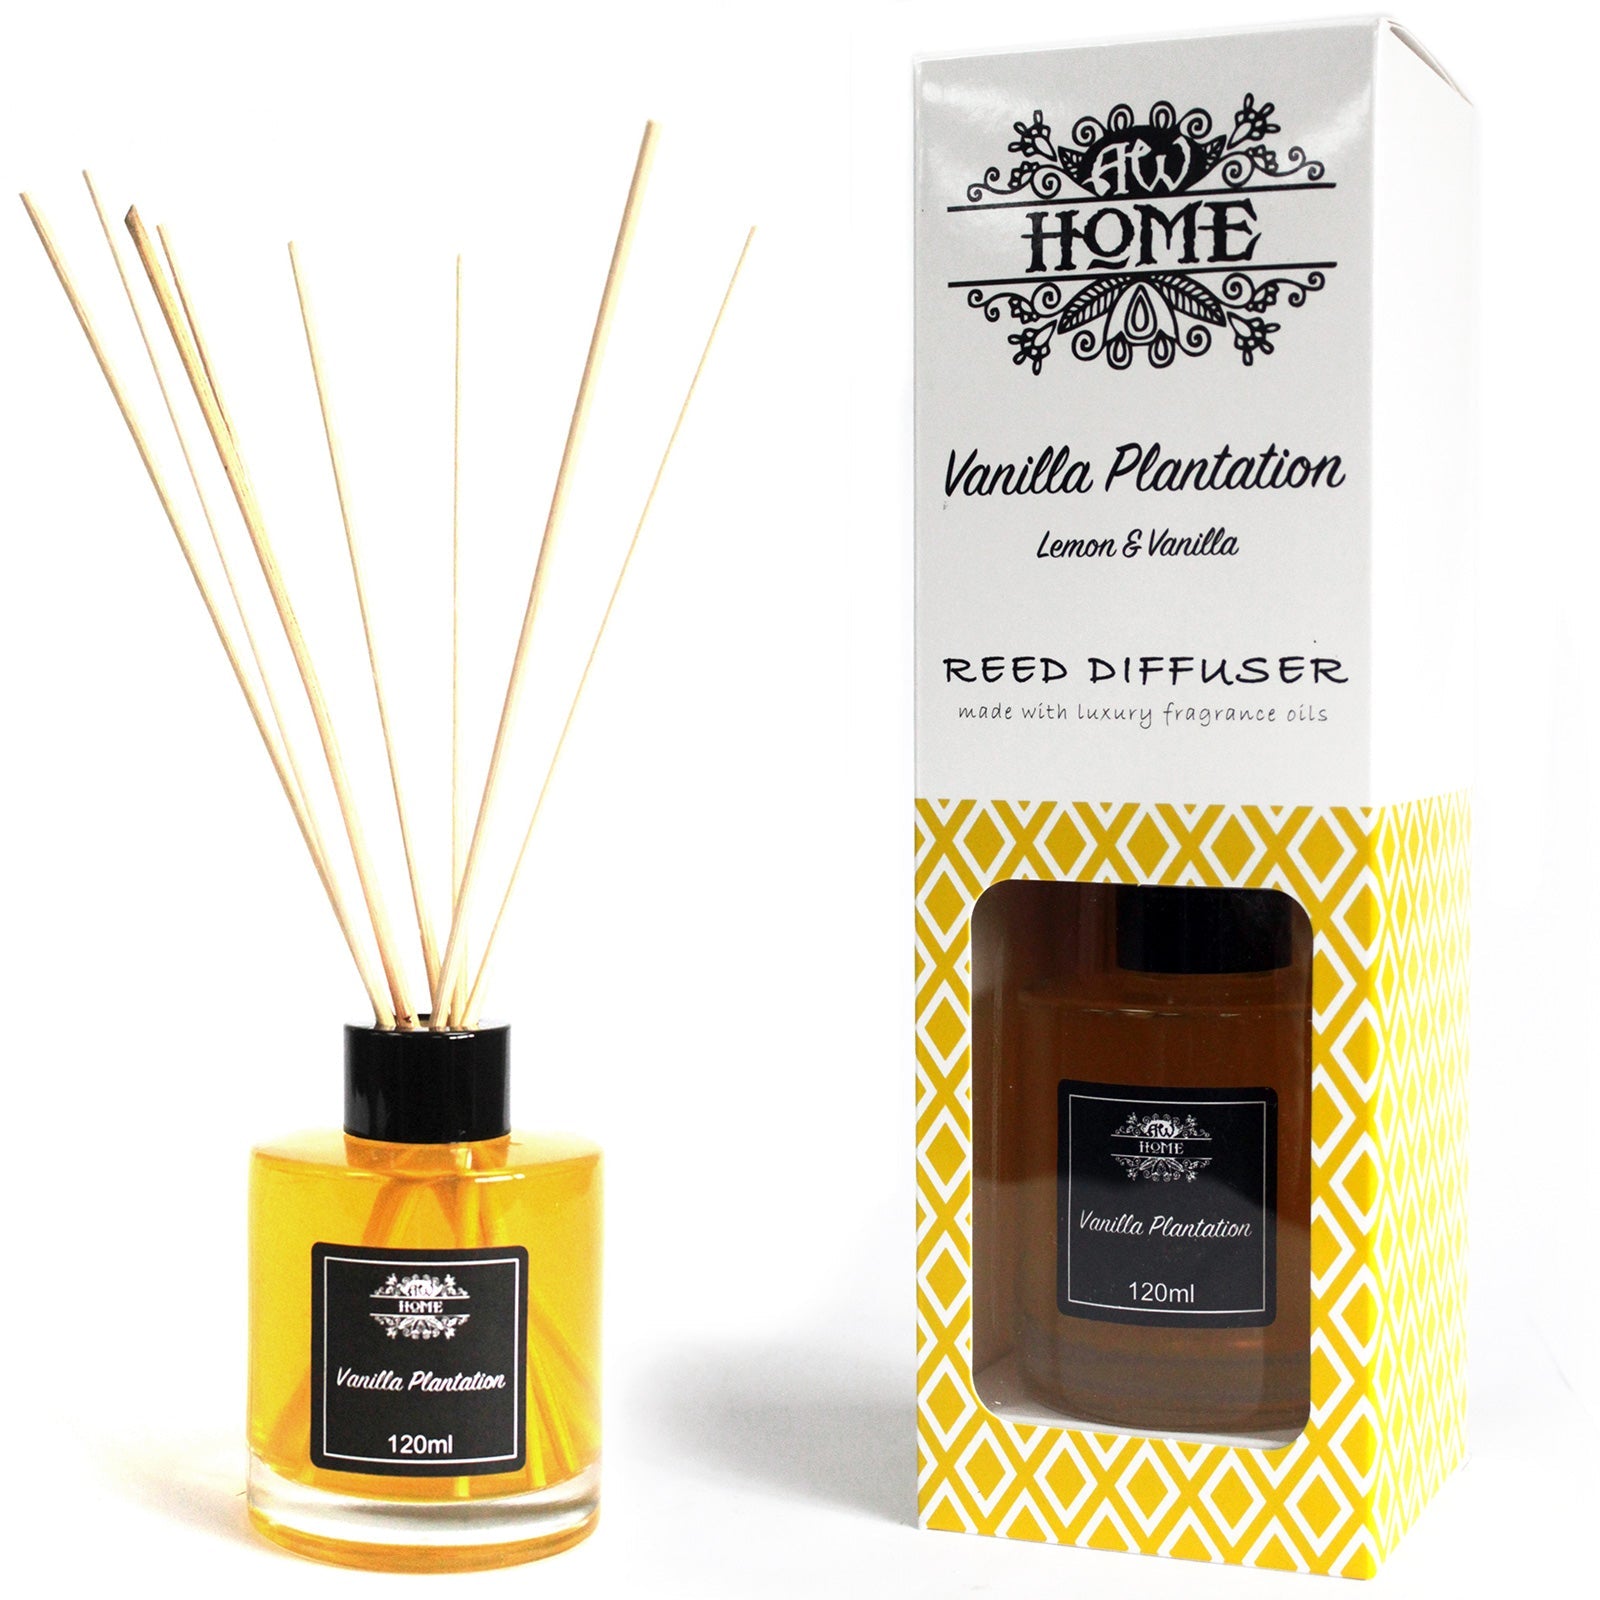 Home Fragrance Reed Diffuser - Various Fragrances - 120ml Home Fragrance Reed Diffusers - 120ml Soul Inspired Vanilla Plantation 